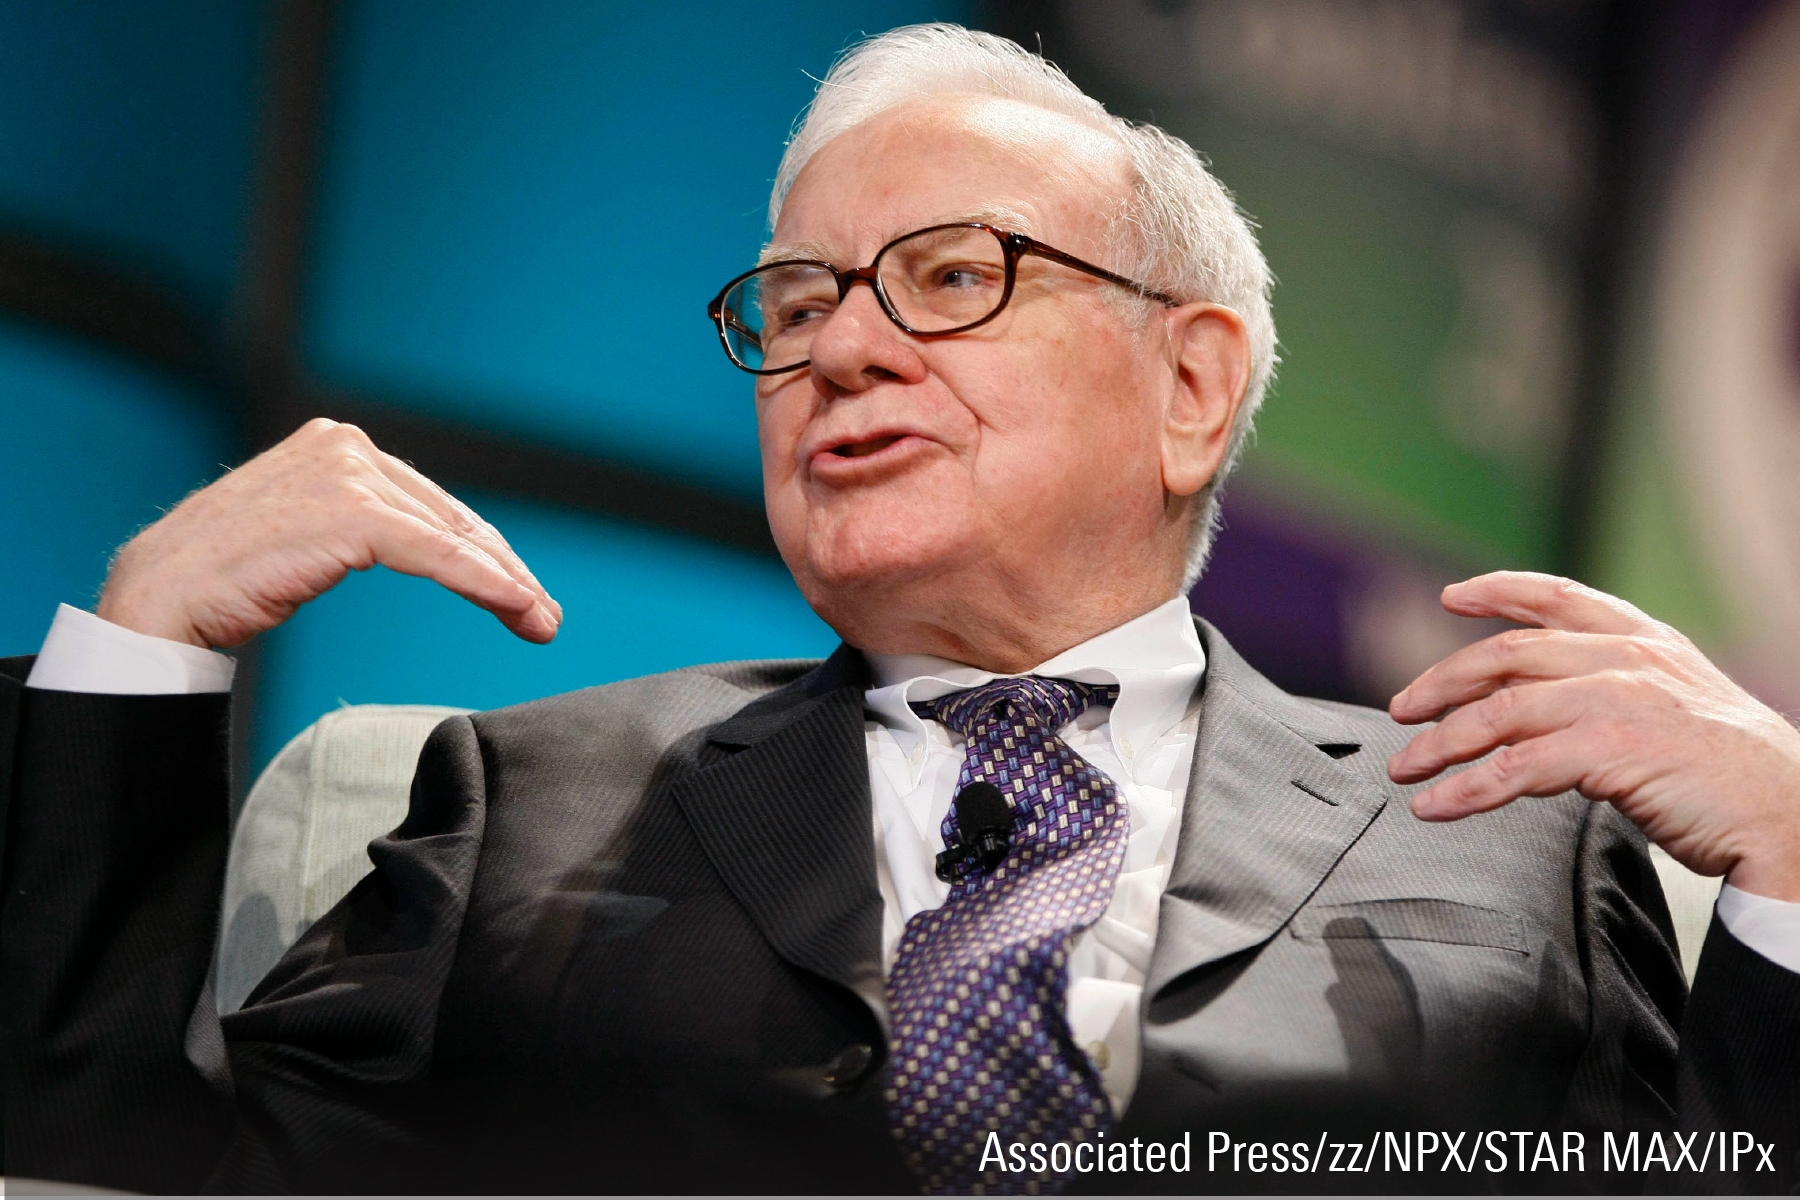 What Is the Mystery Warren Buffett Stock?